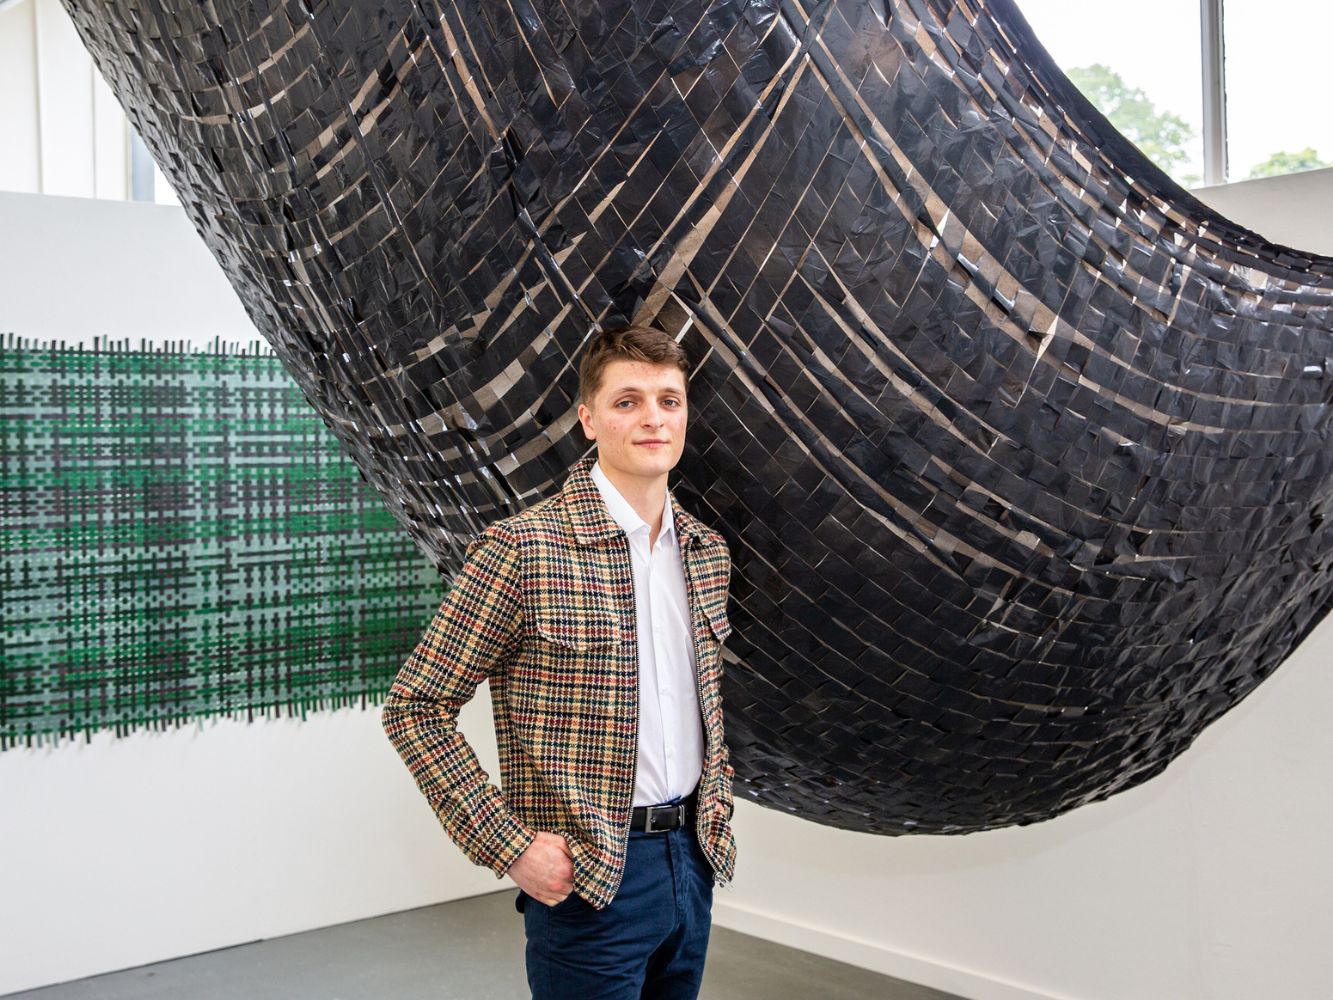 Andrew McFadzean poses with artwork